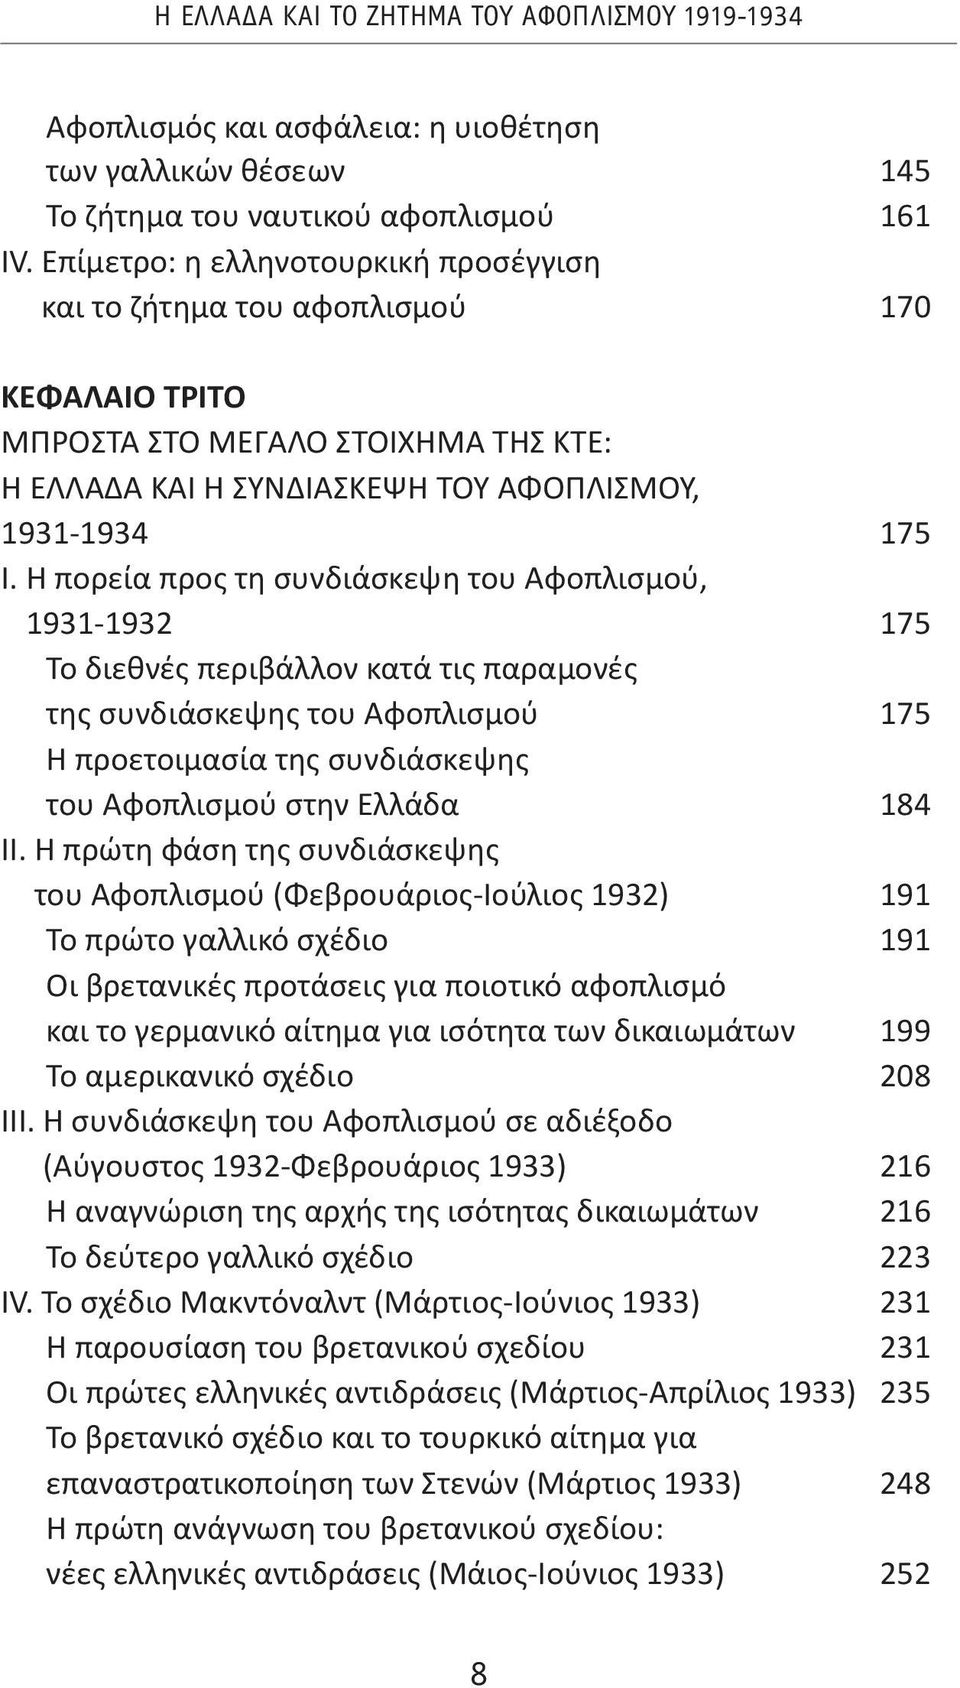 Η πορεία προς τη συνδιάσκεψη του Αφοπλισμού, 1931-1932 175 Το διεθνές περιβάλλον κατά τις παραμονές της συνδιάσκεψης του Αφοπλισμού 175 Η προετοιμασία της συνδιάσκεψης του Αφοπλισμού στην Ελλάδα 184